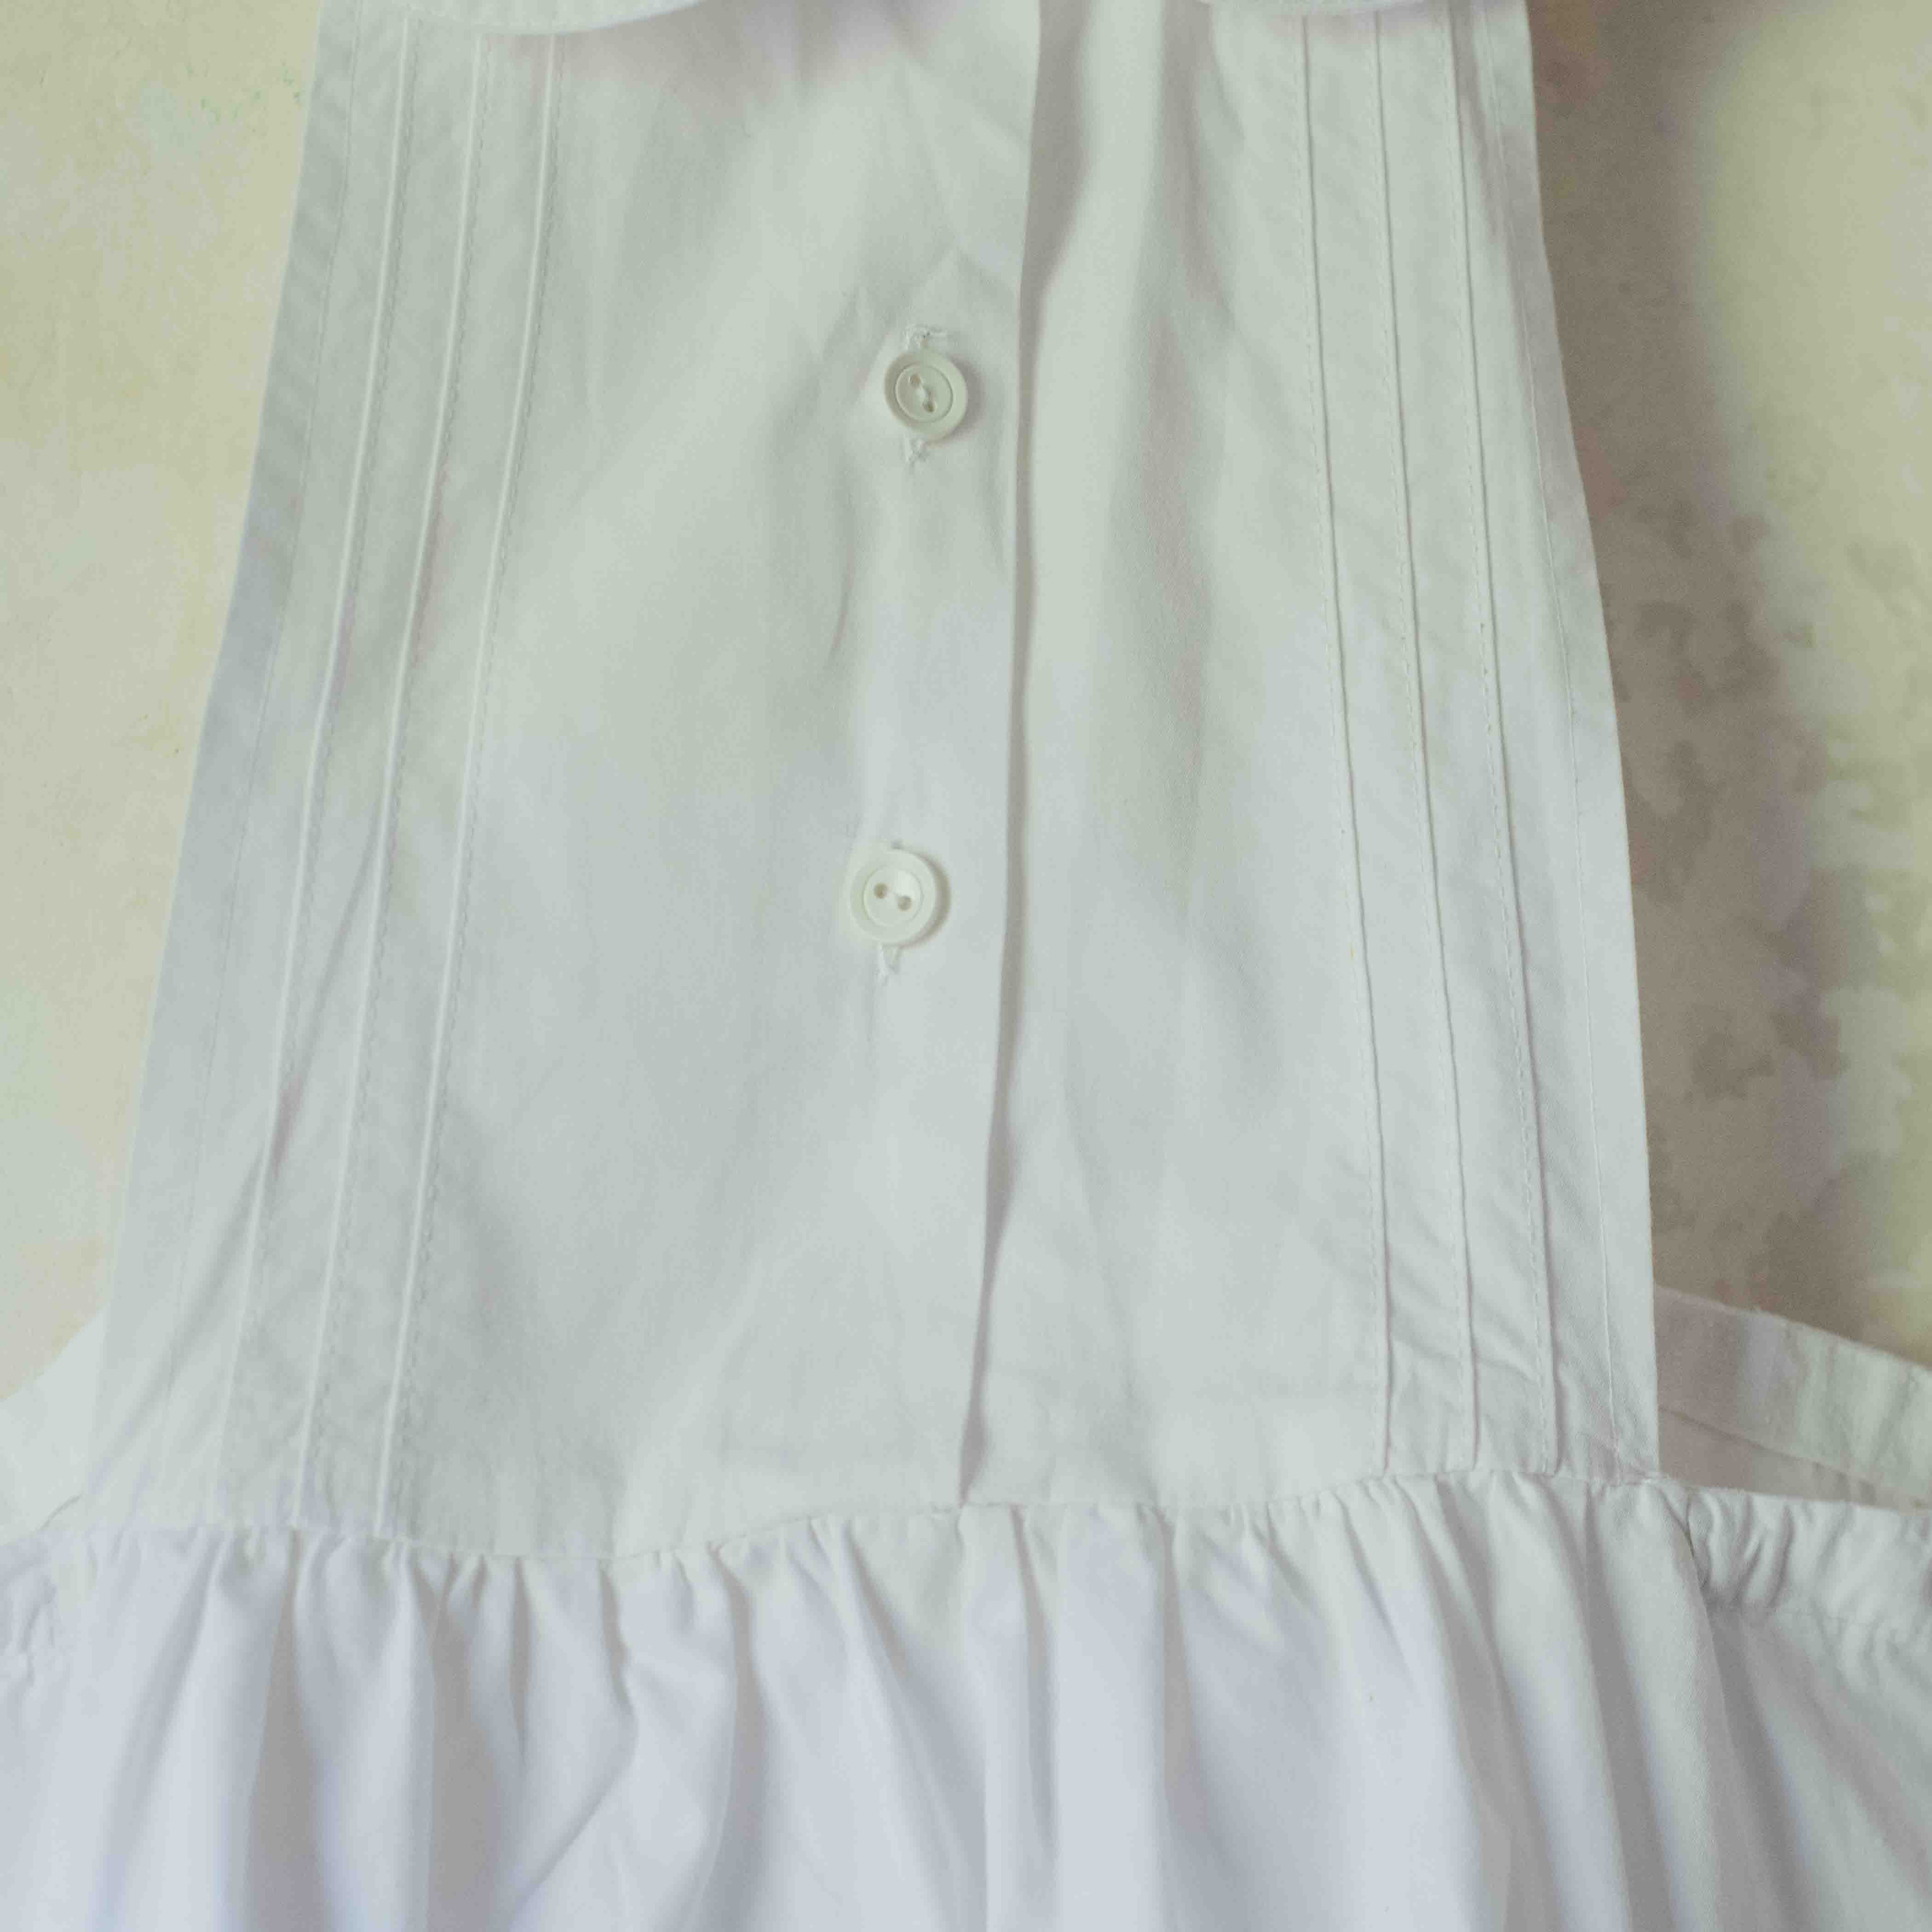 שמלה לבנה בגזרה מהממת | 6-7 שנים